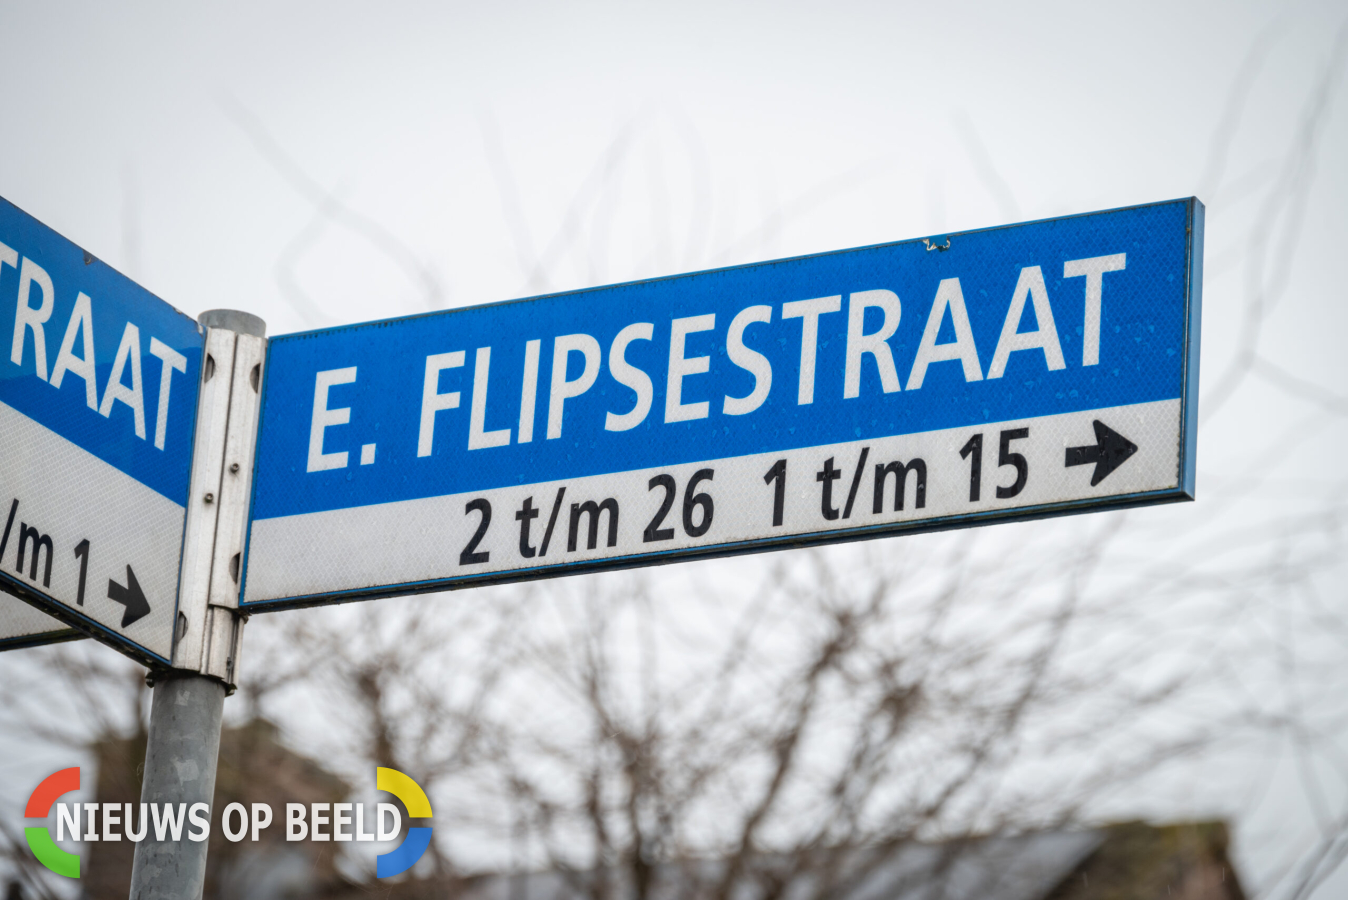 Ruiten gesprongen na explosie bij woning E. Flipsestraat Spijkenisse